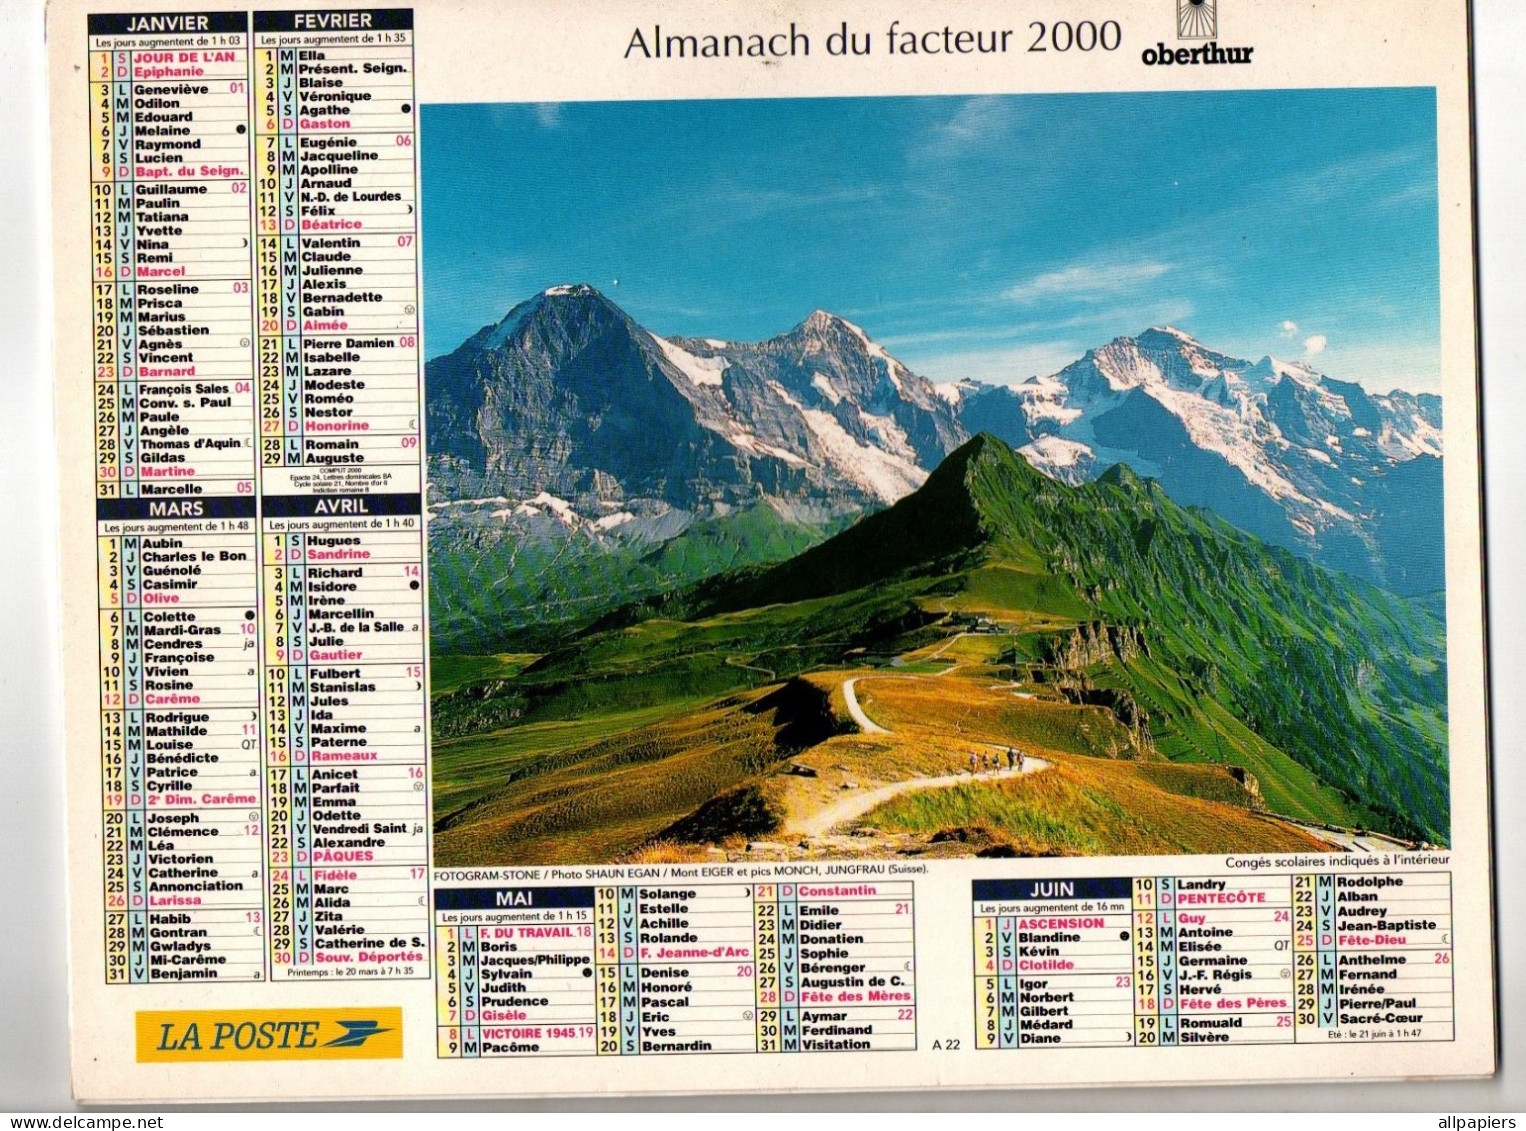 Almanach Du Facteur 2000 Oberthur - Complet Région Nord - Grand Format : 1991-00